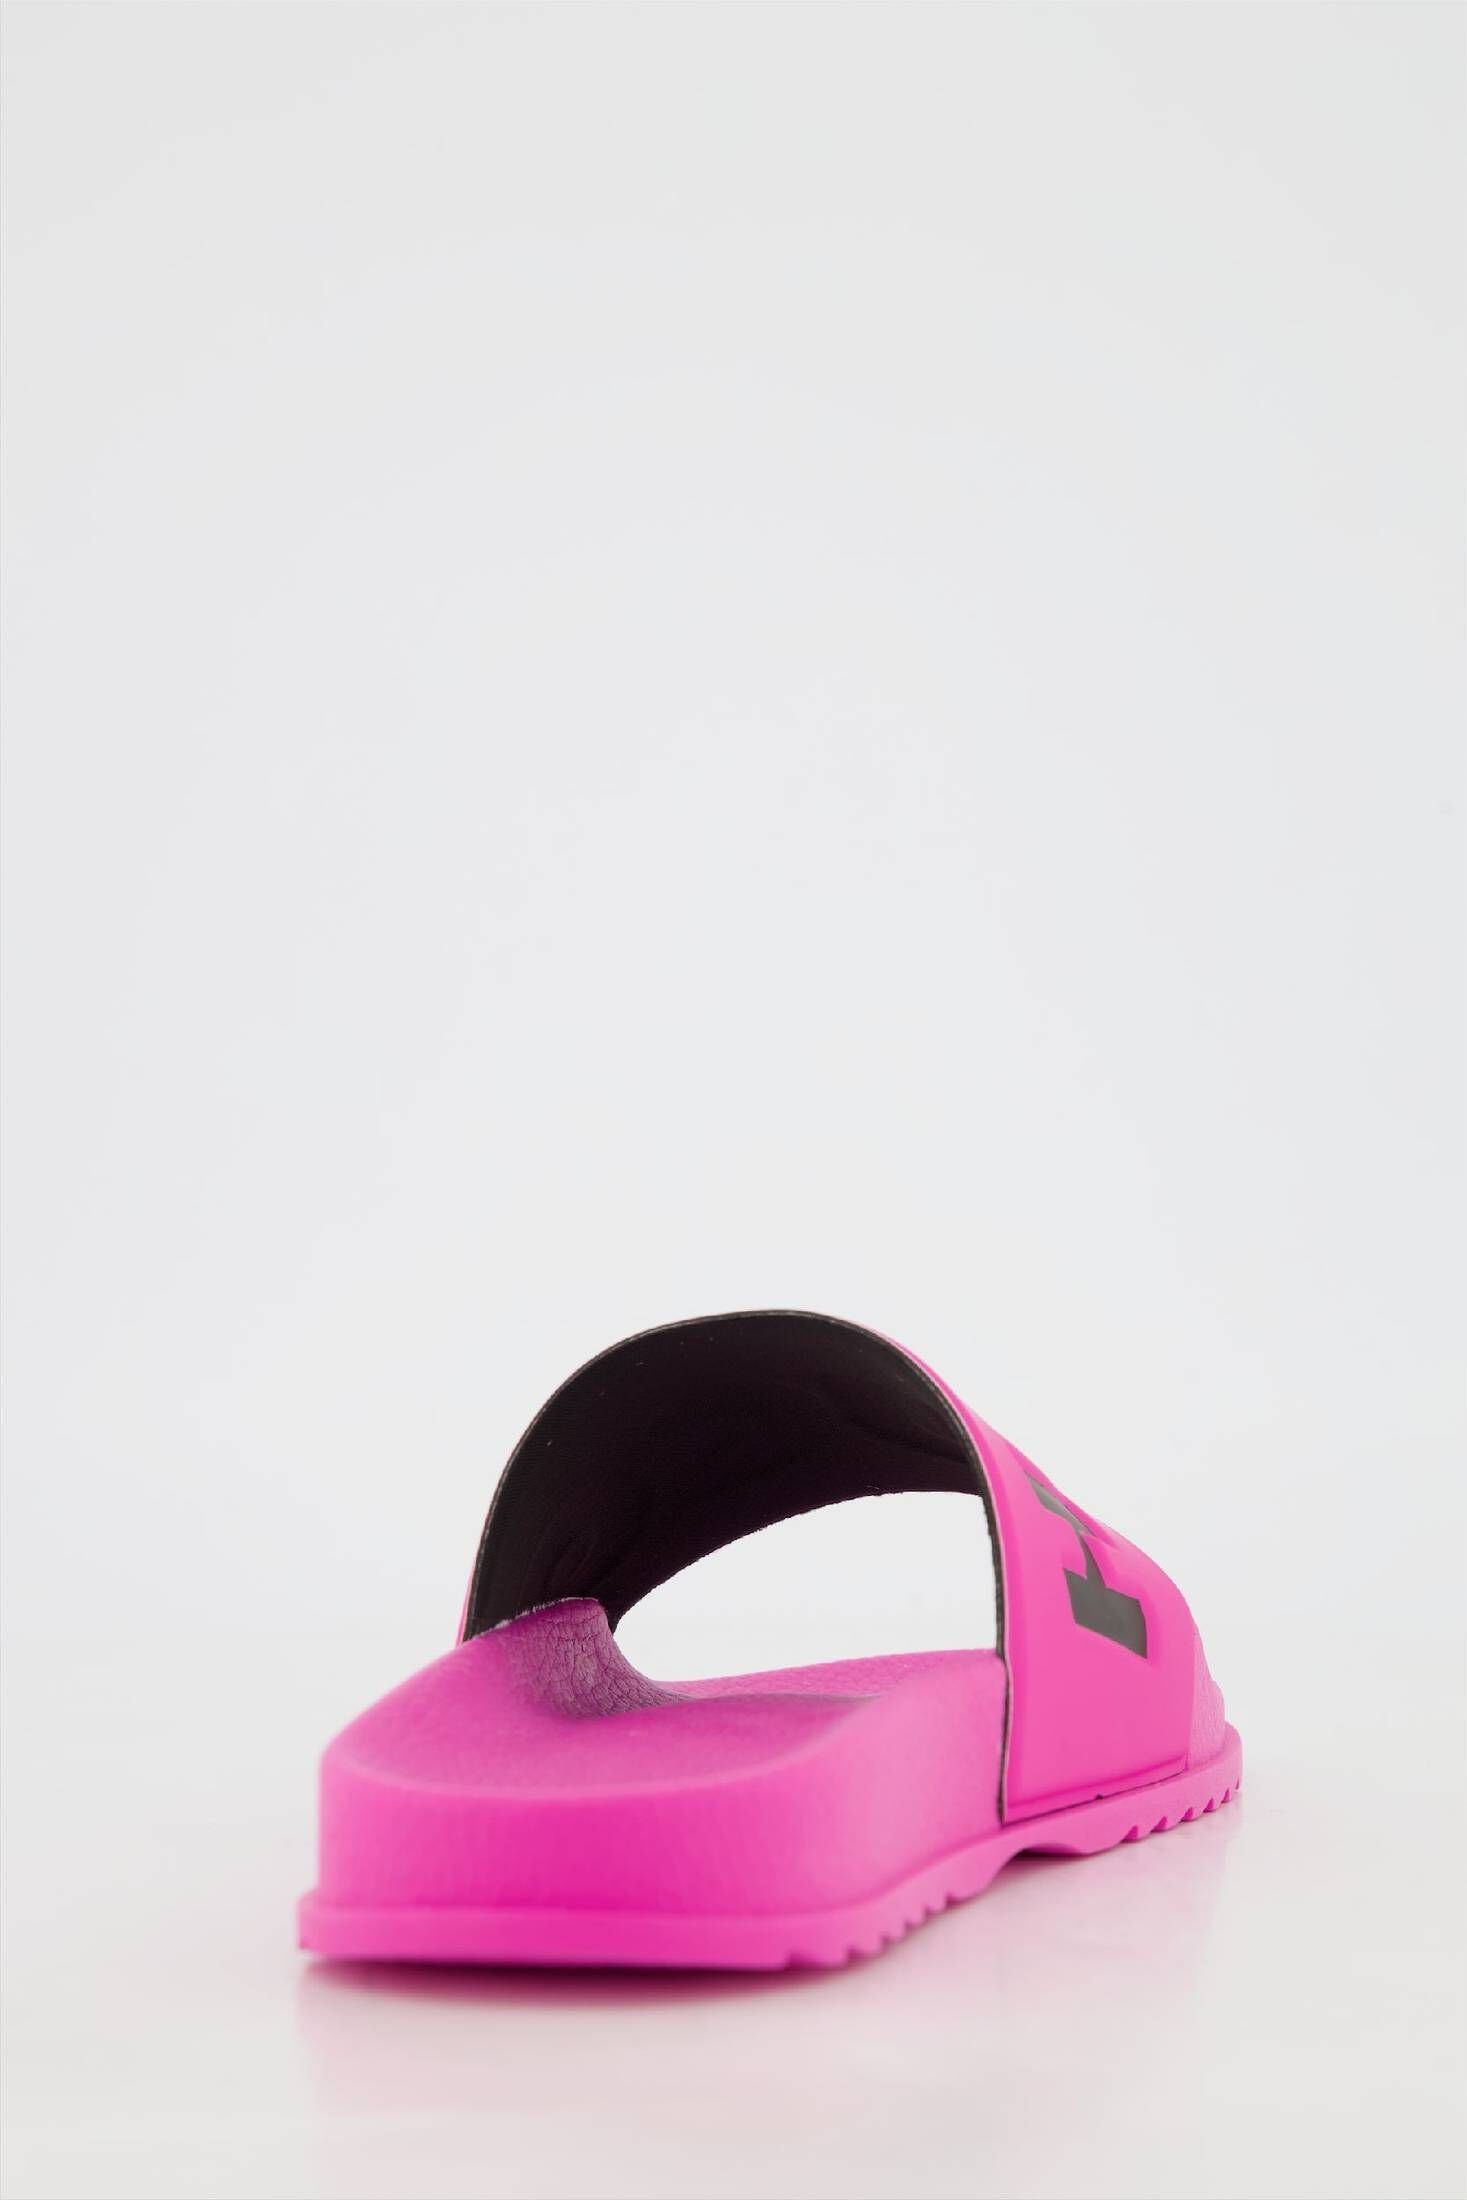 HUGO Damen MATCH_IT_SLID_RBLG pink (71) Sandale Pantoletten